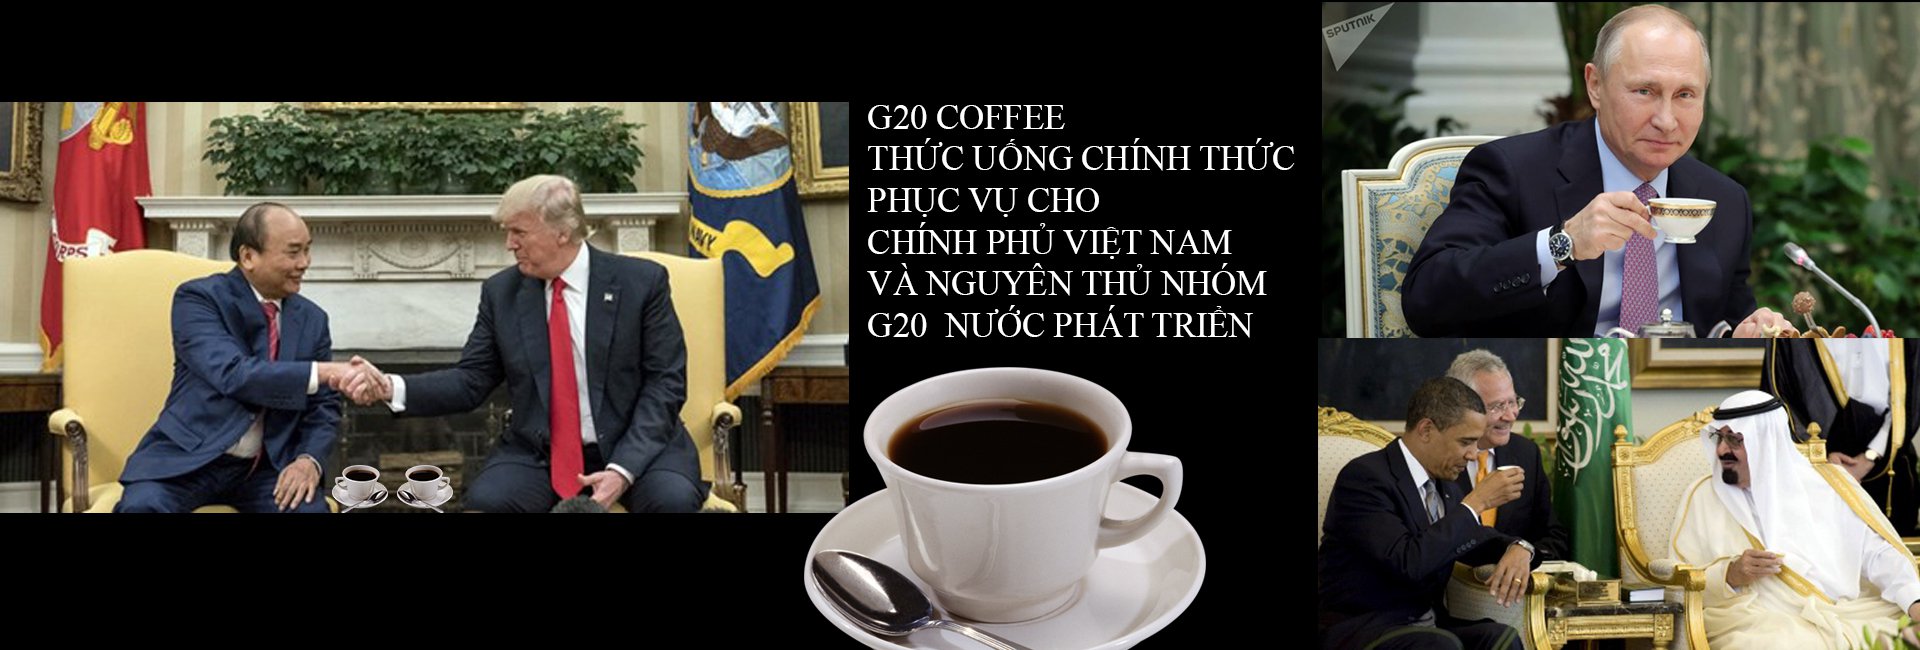 CAFE CHO NGUYÊN THỦ